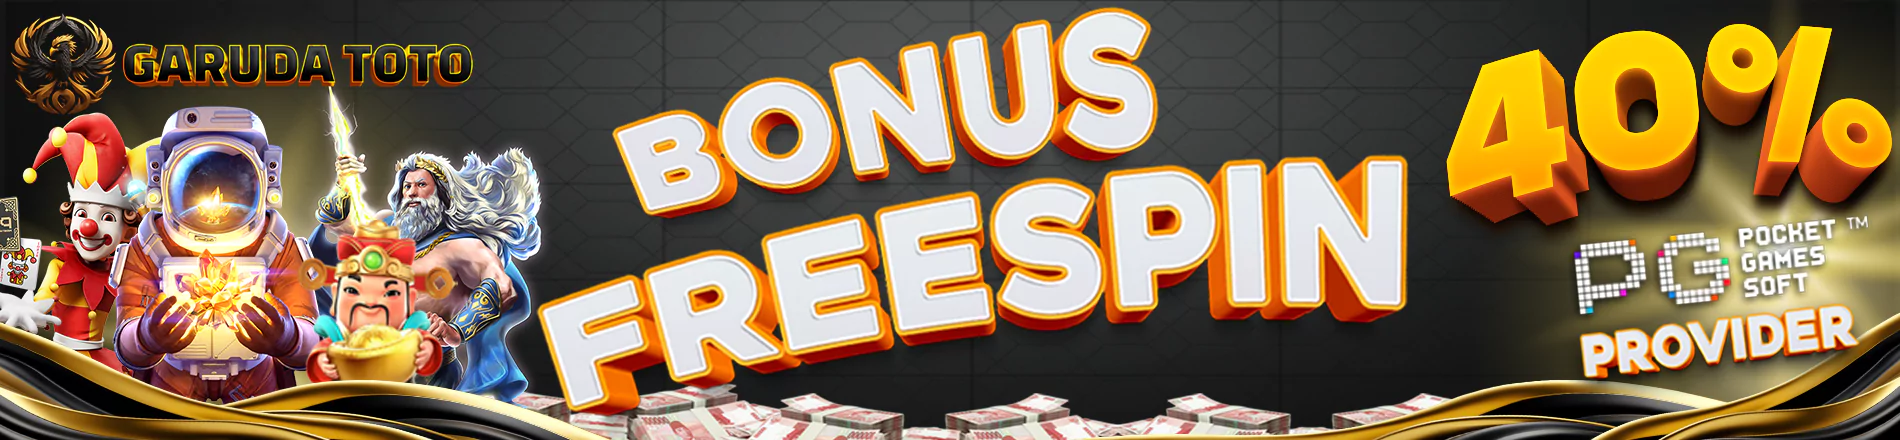 Bonus Freespin Slot PG Soft 40% - Garudatoto